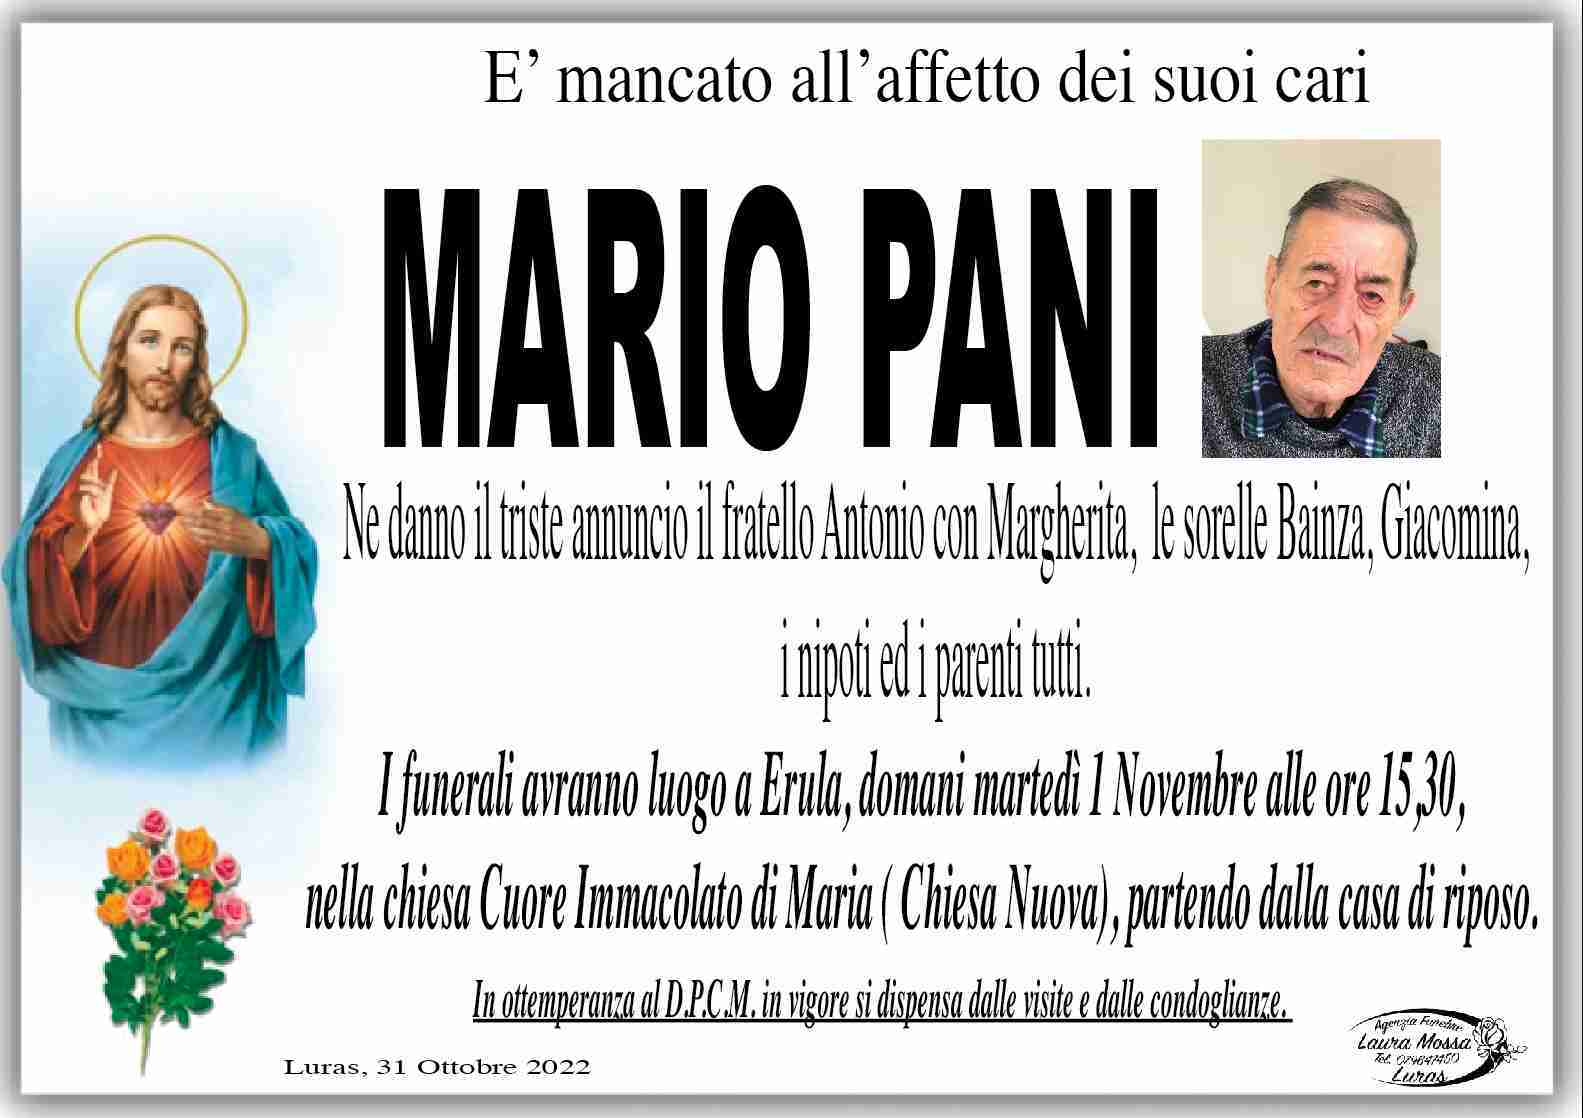 Mario Pani